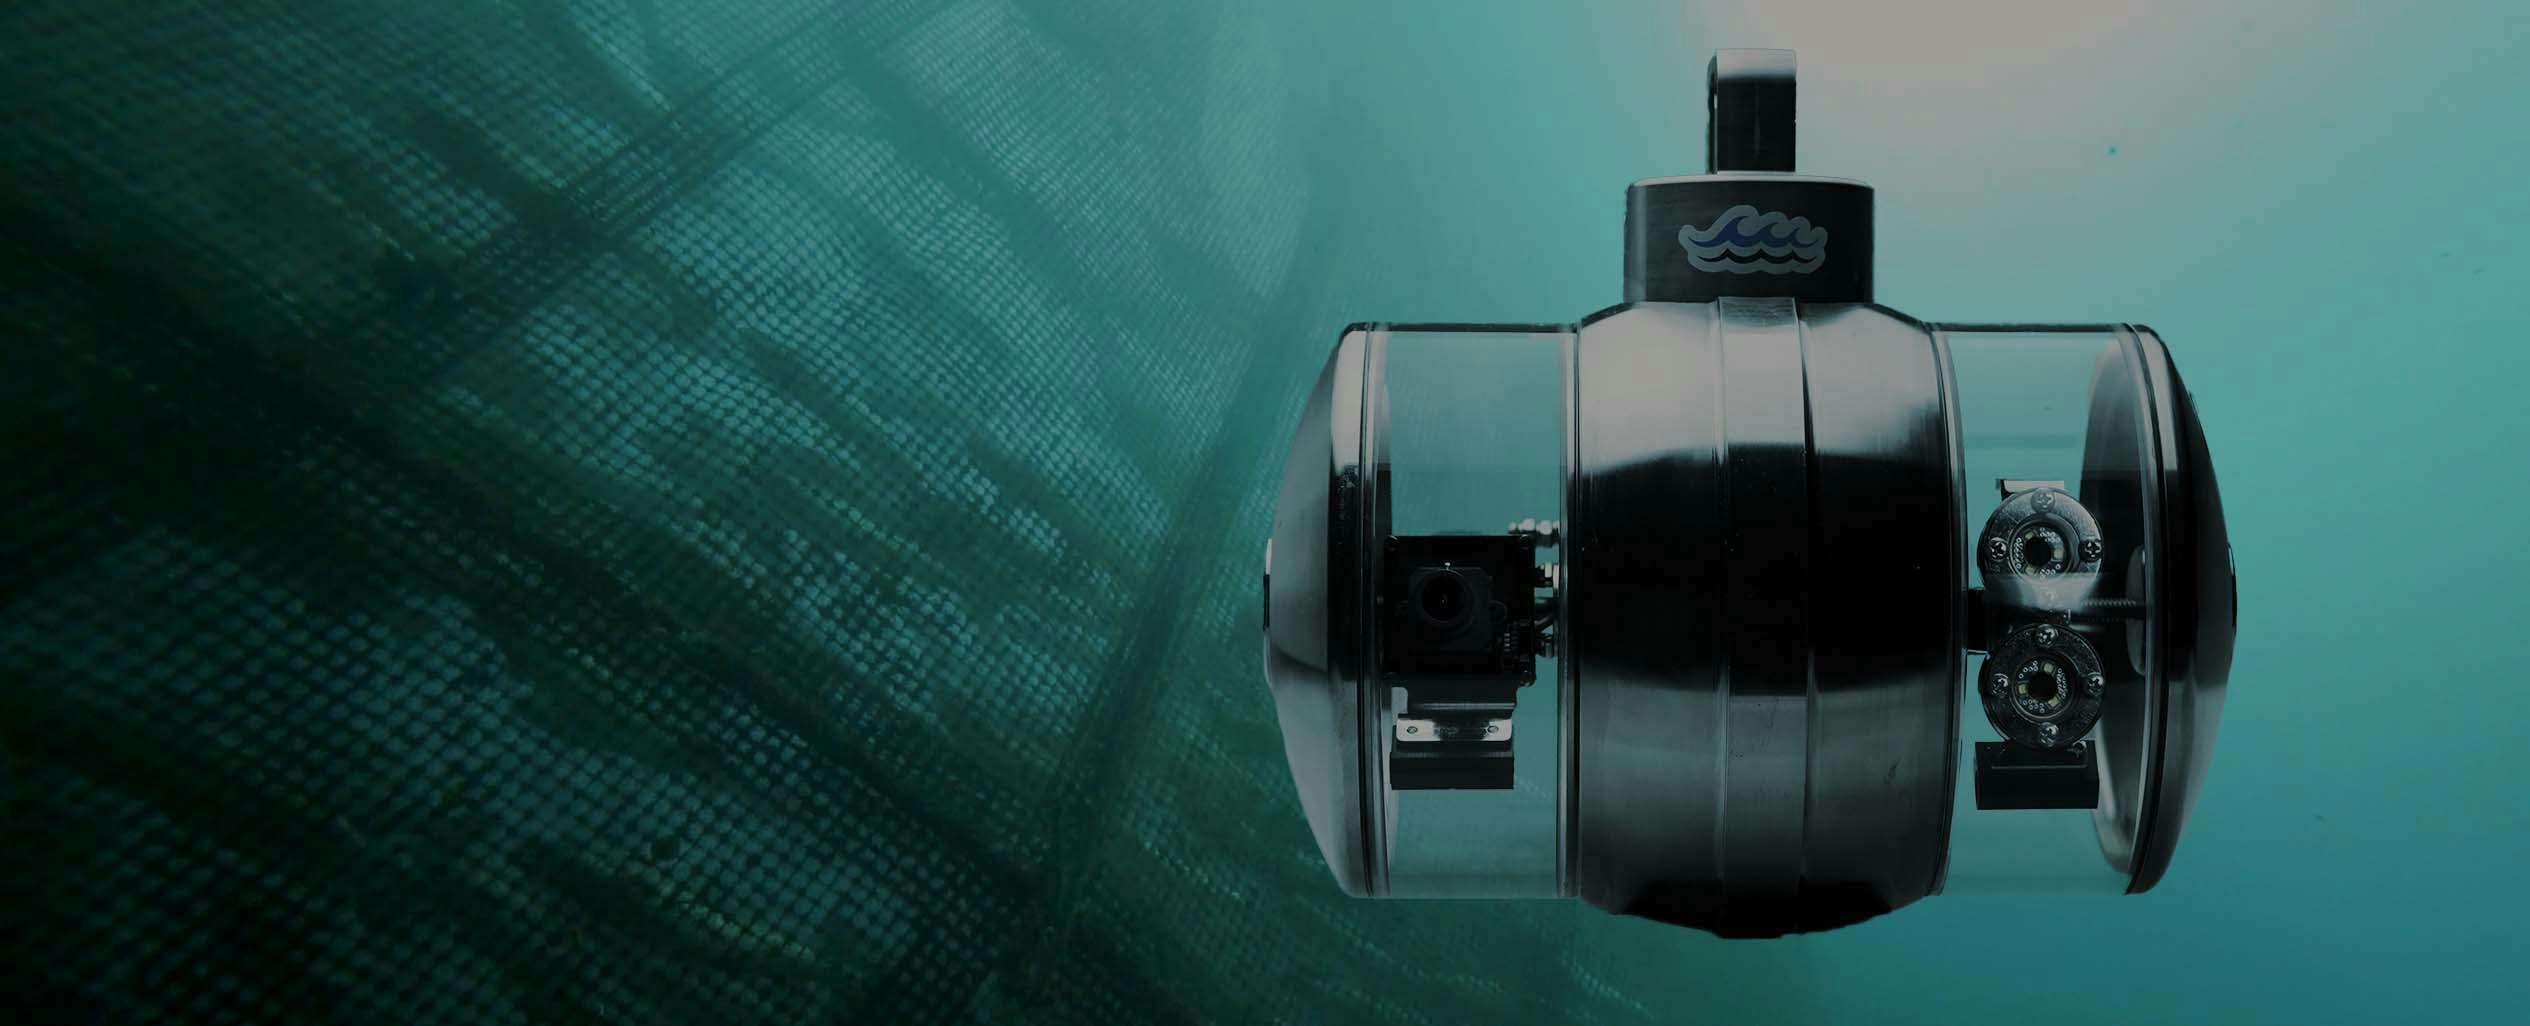 DTPod underwater Surveillance camera